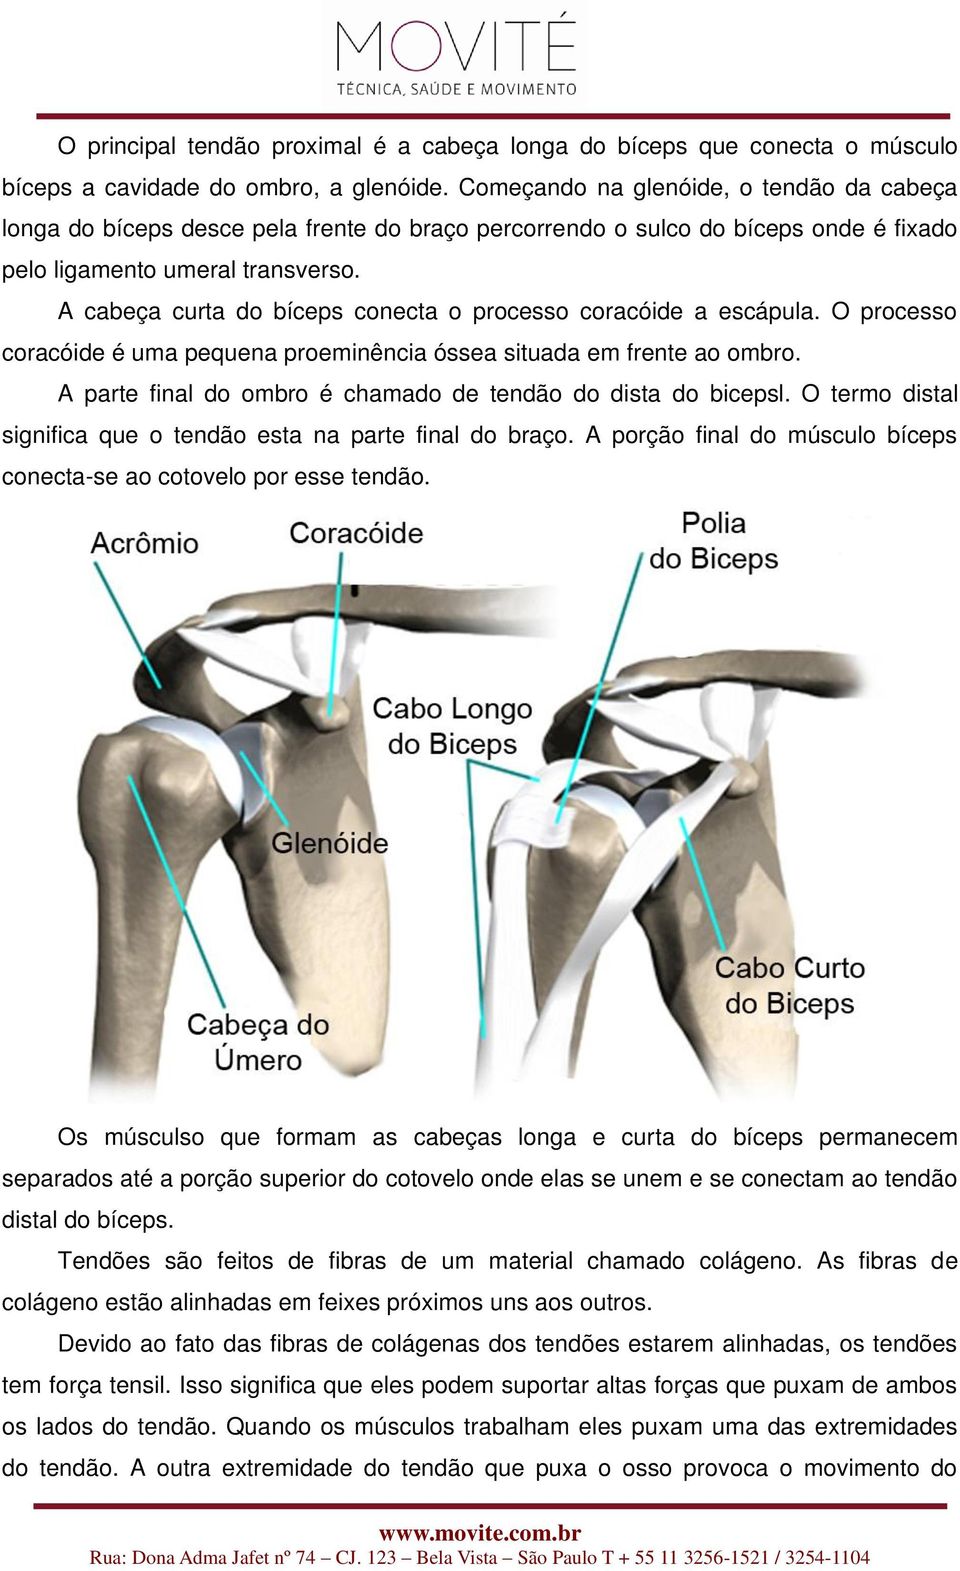 A cabeça curta do bíceps conecta o processo coracóide a escápula. O processo coracóide é uma pequena proeminência óssea situada em frente ao ombro.